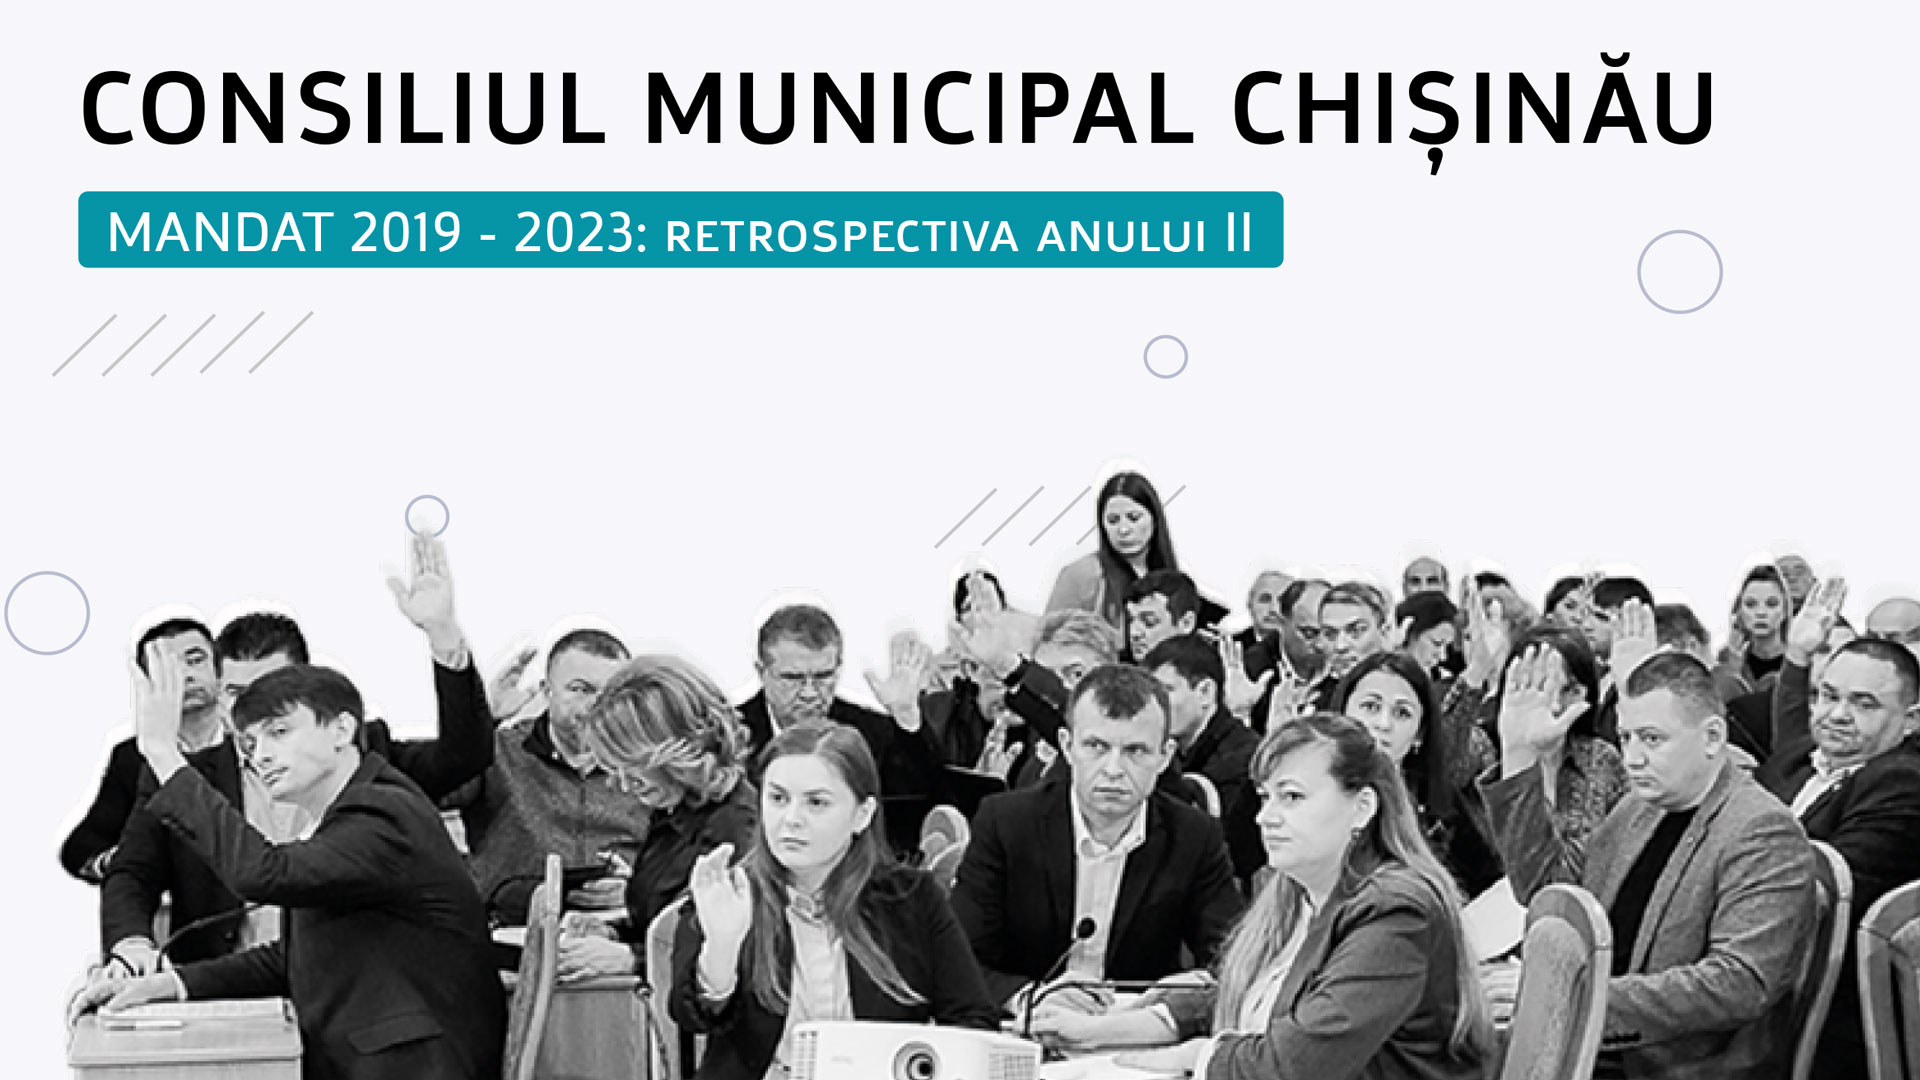 Consiliul Municipal Chișinău în al doilea an de mandat – doar în ședințe „extraordinare” și cu mai puține inițiative Image